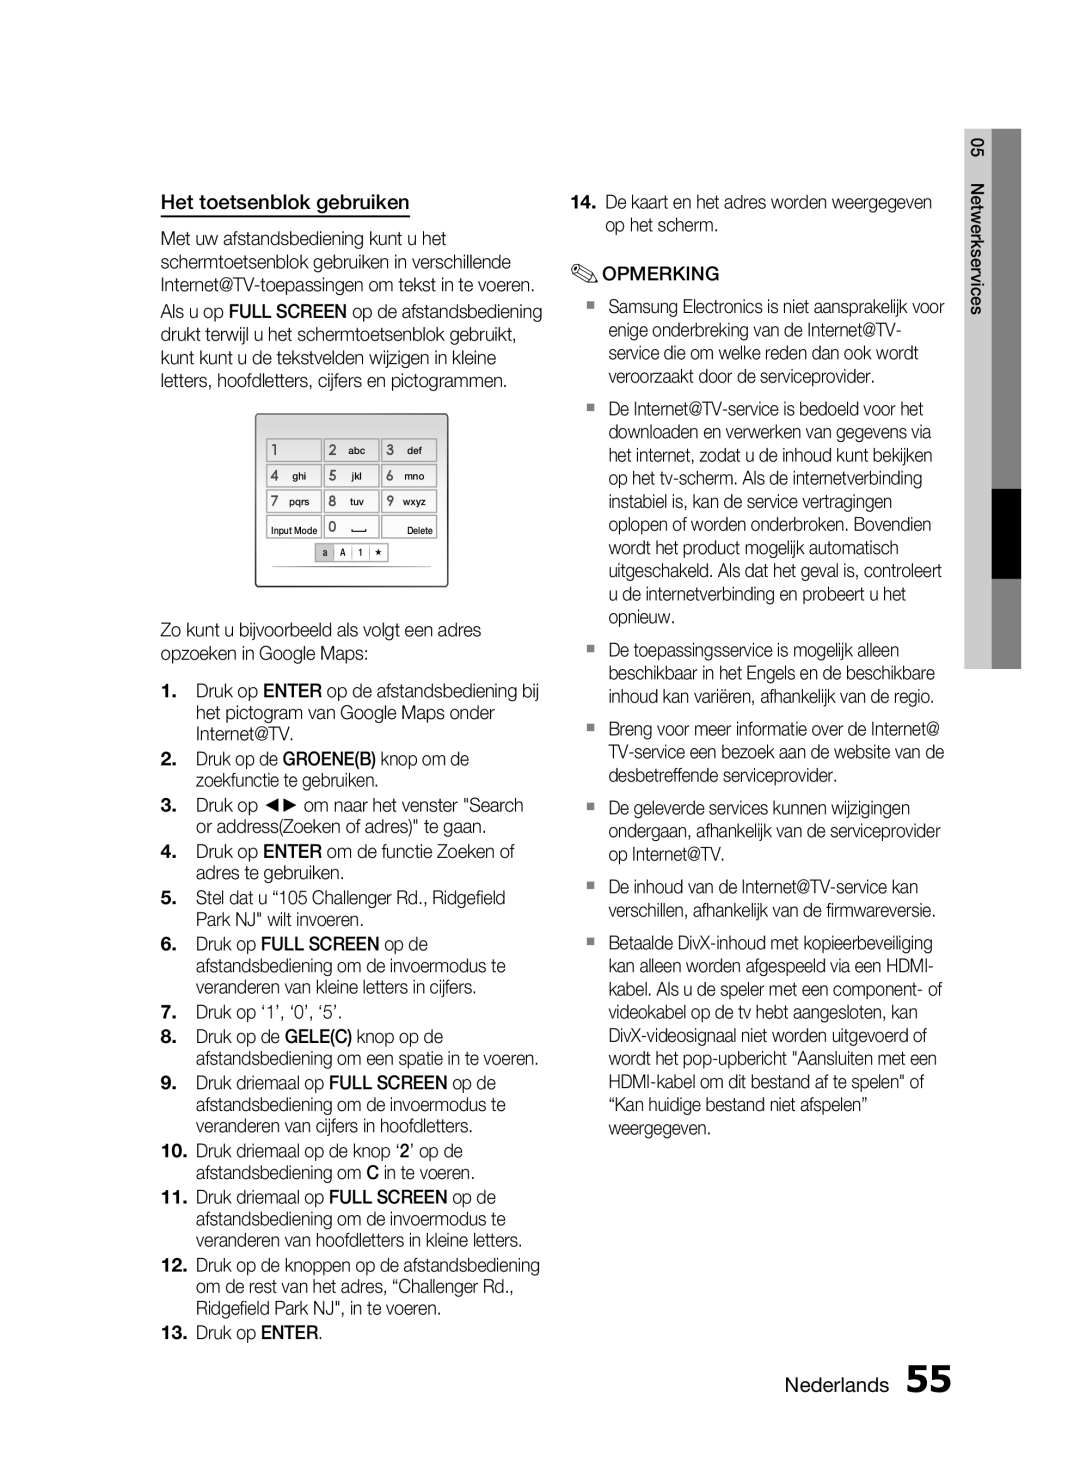 Samsung HT-C6200/XEF manual Het toetsenblok gebruiken, Nederlands, Druk op de GROENEB knop om de zoekfunctie te gebruiken 